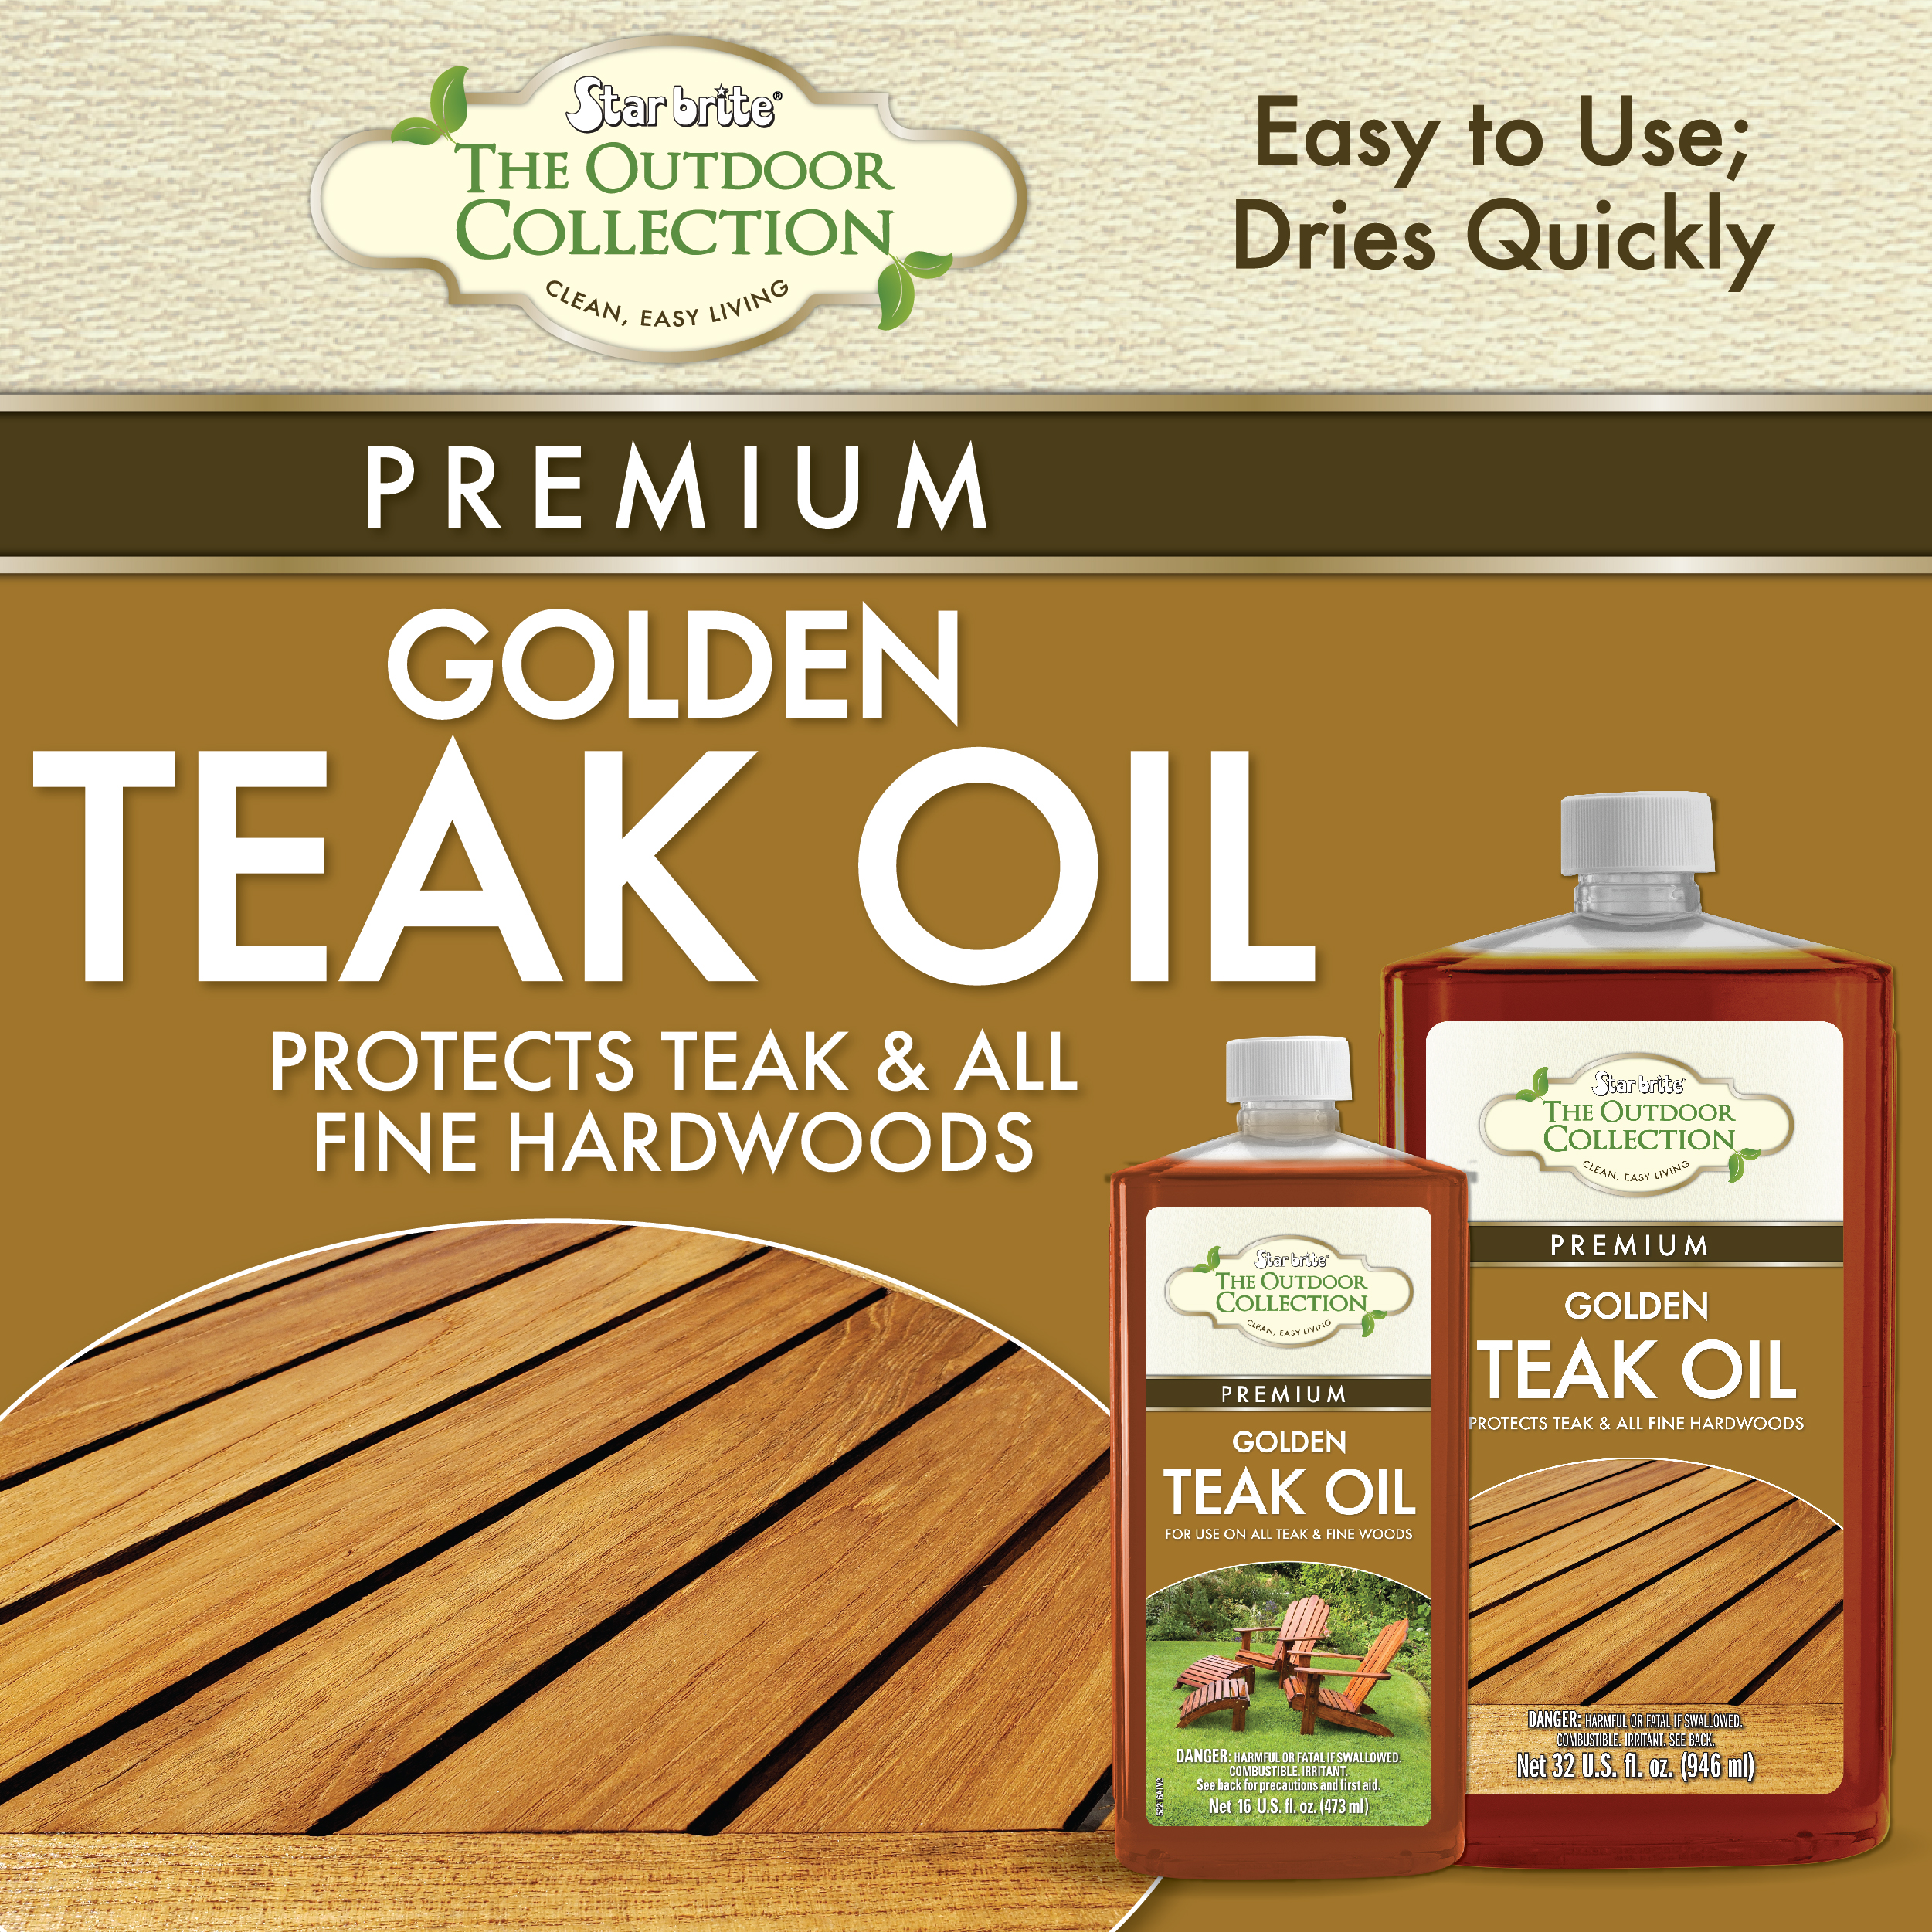 WEST MARINE Premium Golden Teak Oil, Quart